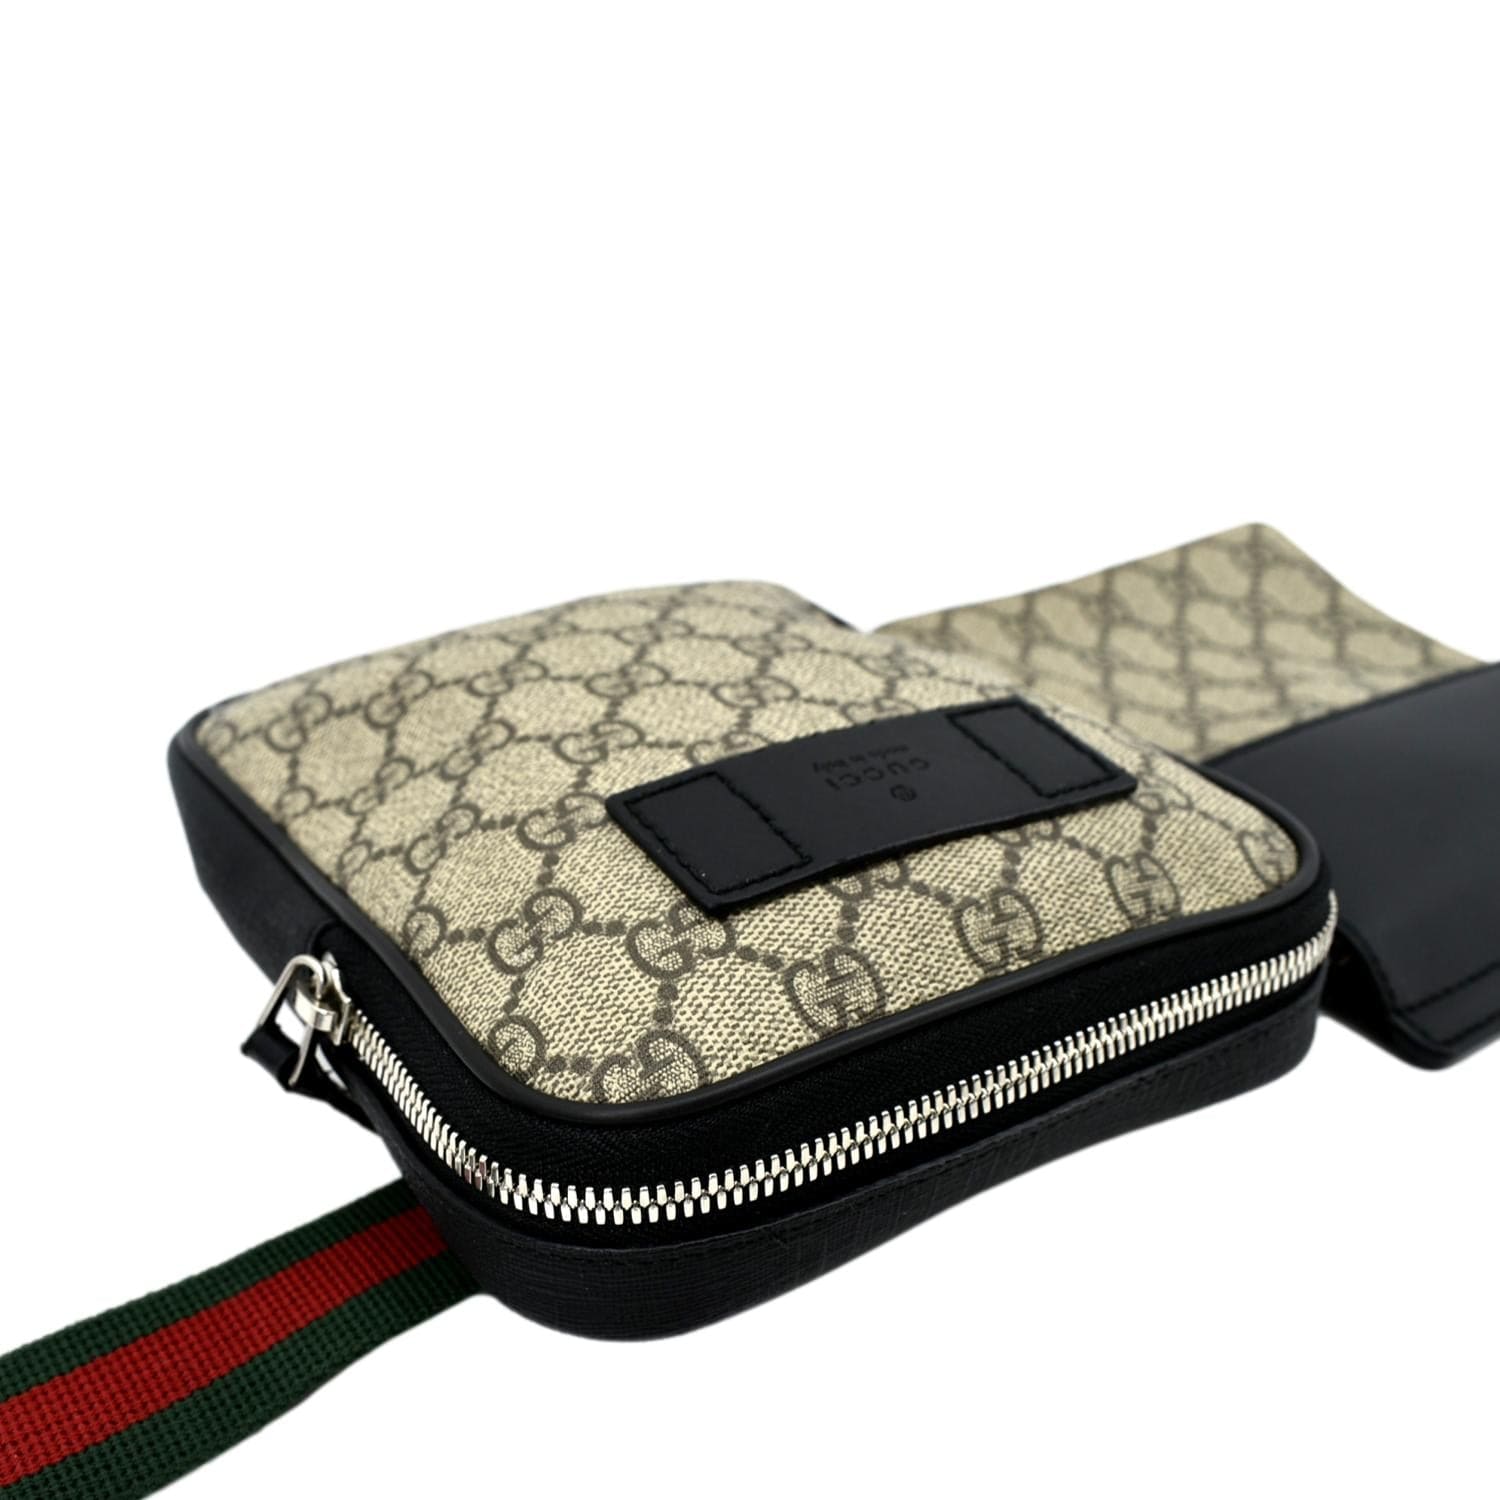 NEW Gucci Supreme Belt Bag, Bags